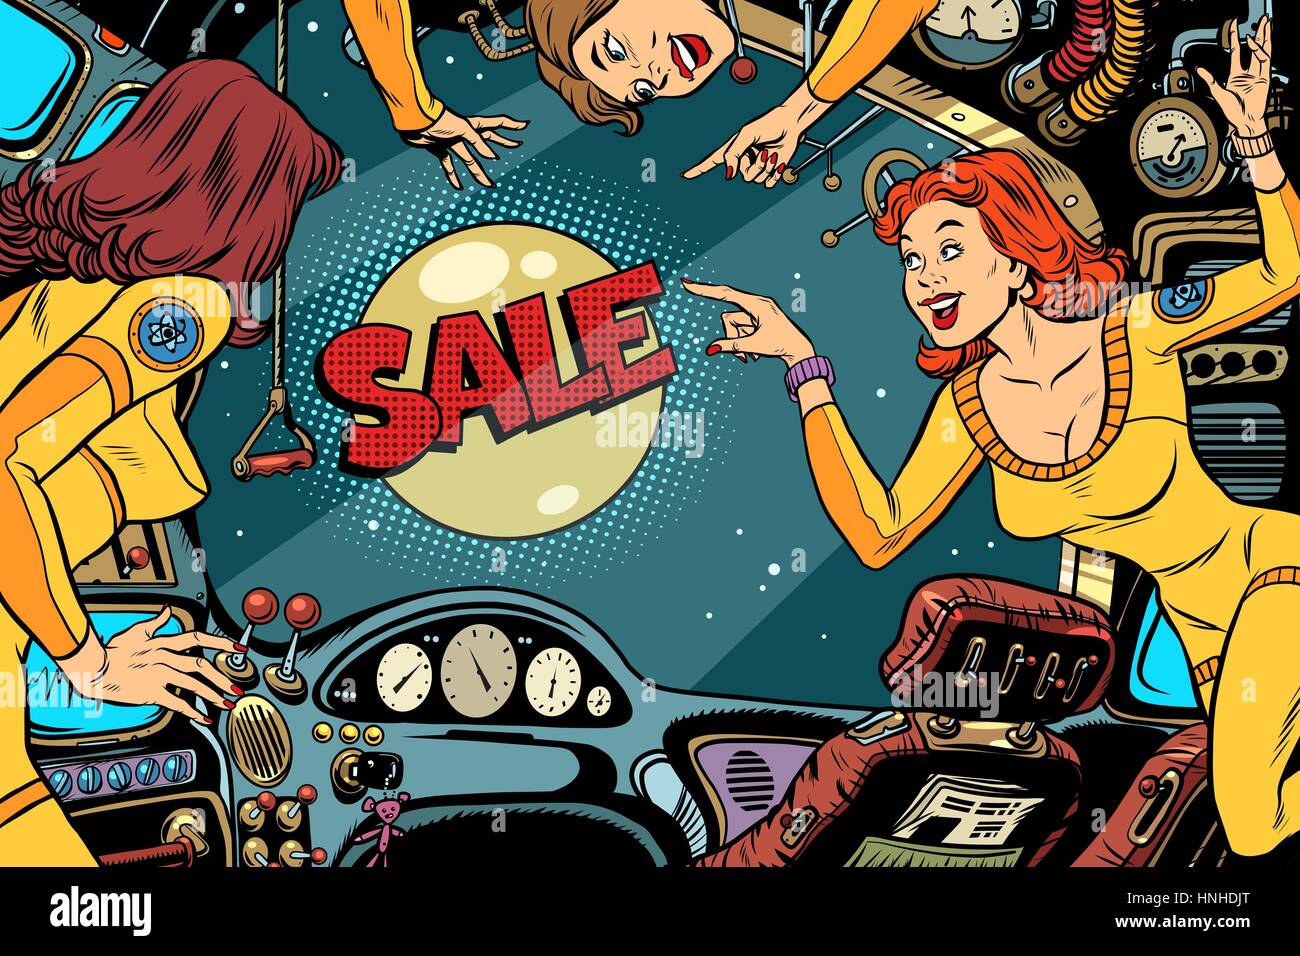 La vendita e le donne gli astronauti in cabina di una astronave guardando fuori dalla finestra. Fumetti Vintage pop art retrò Illustrazione a colori Illustrazione Vettoriale